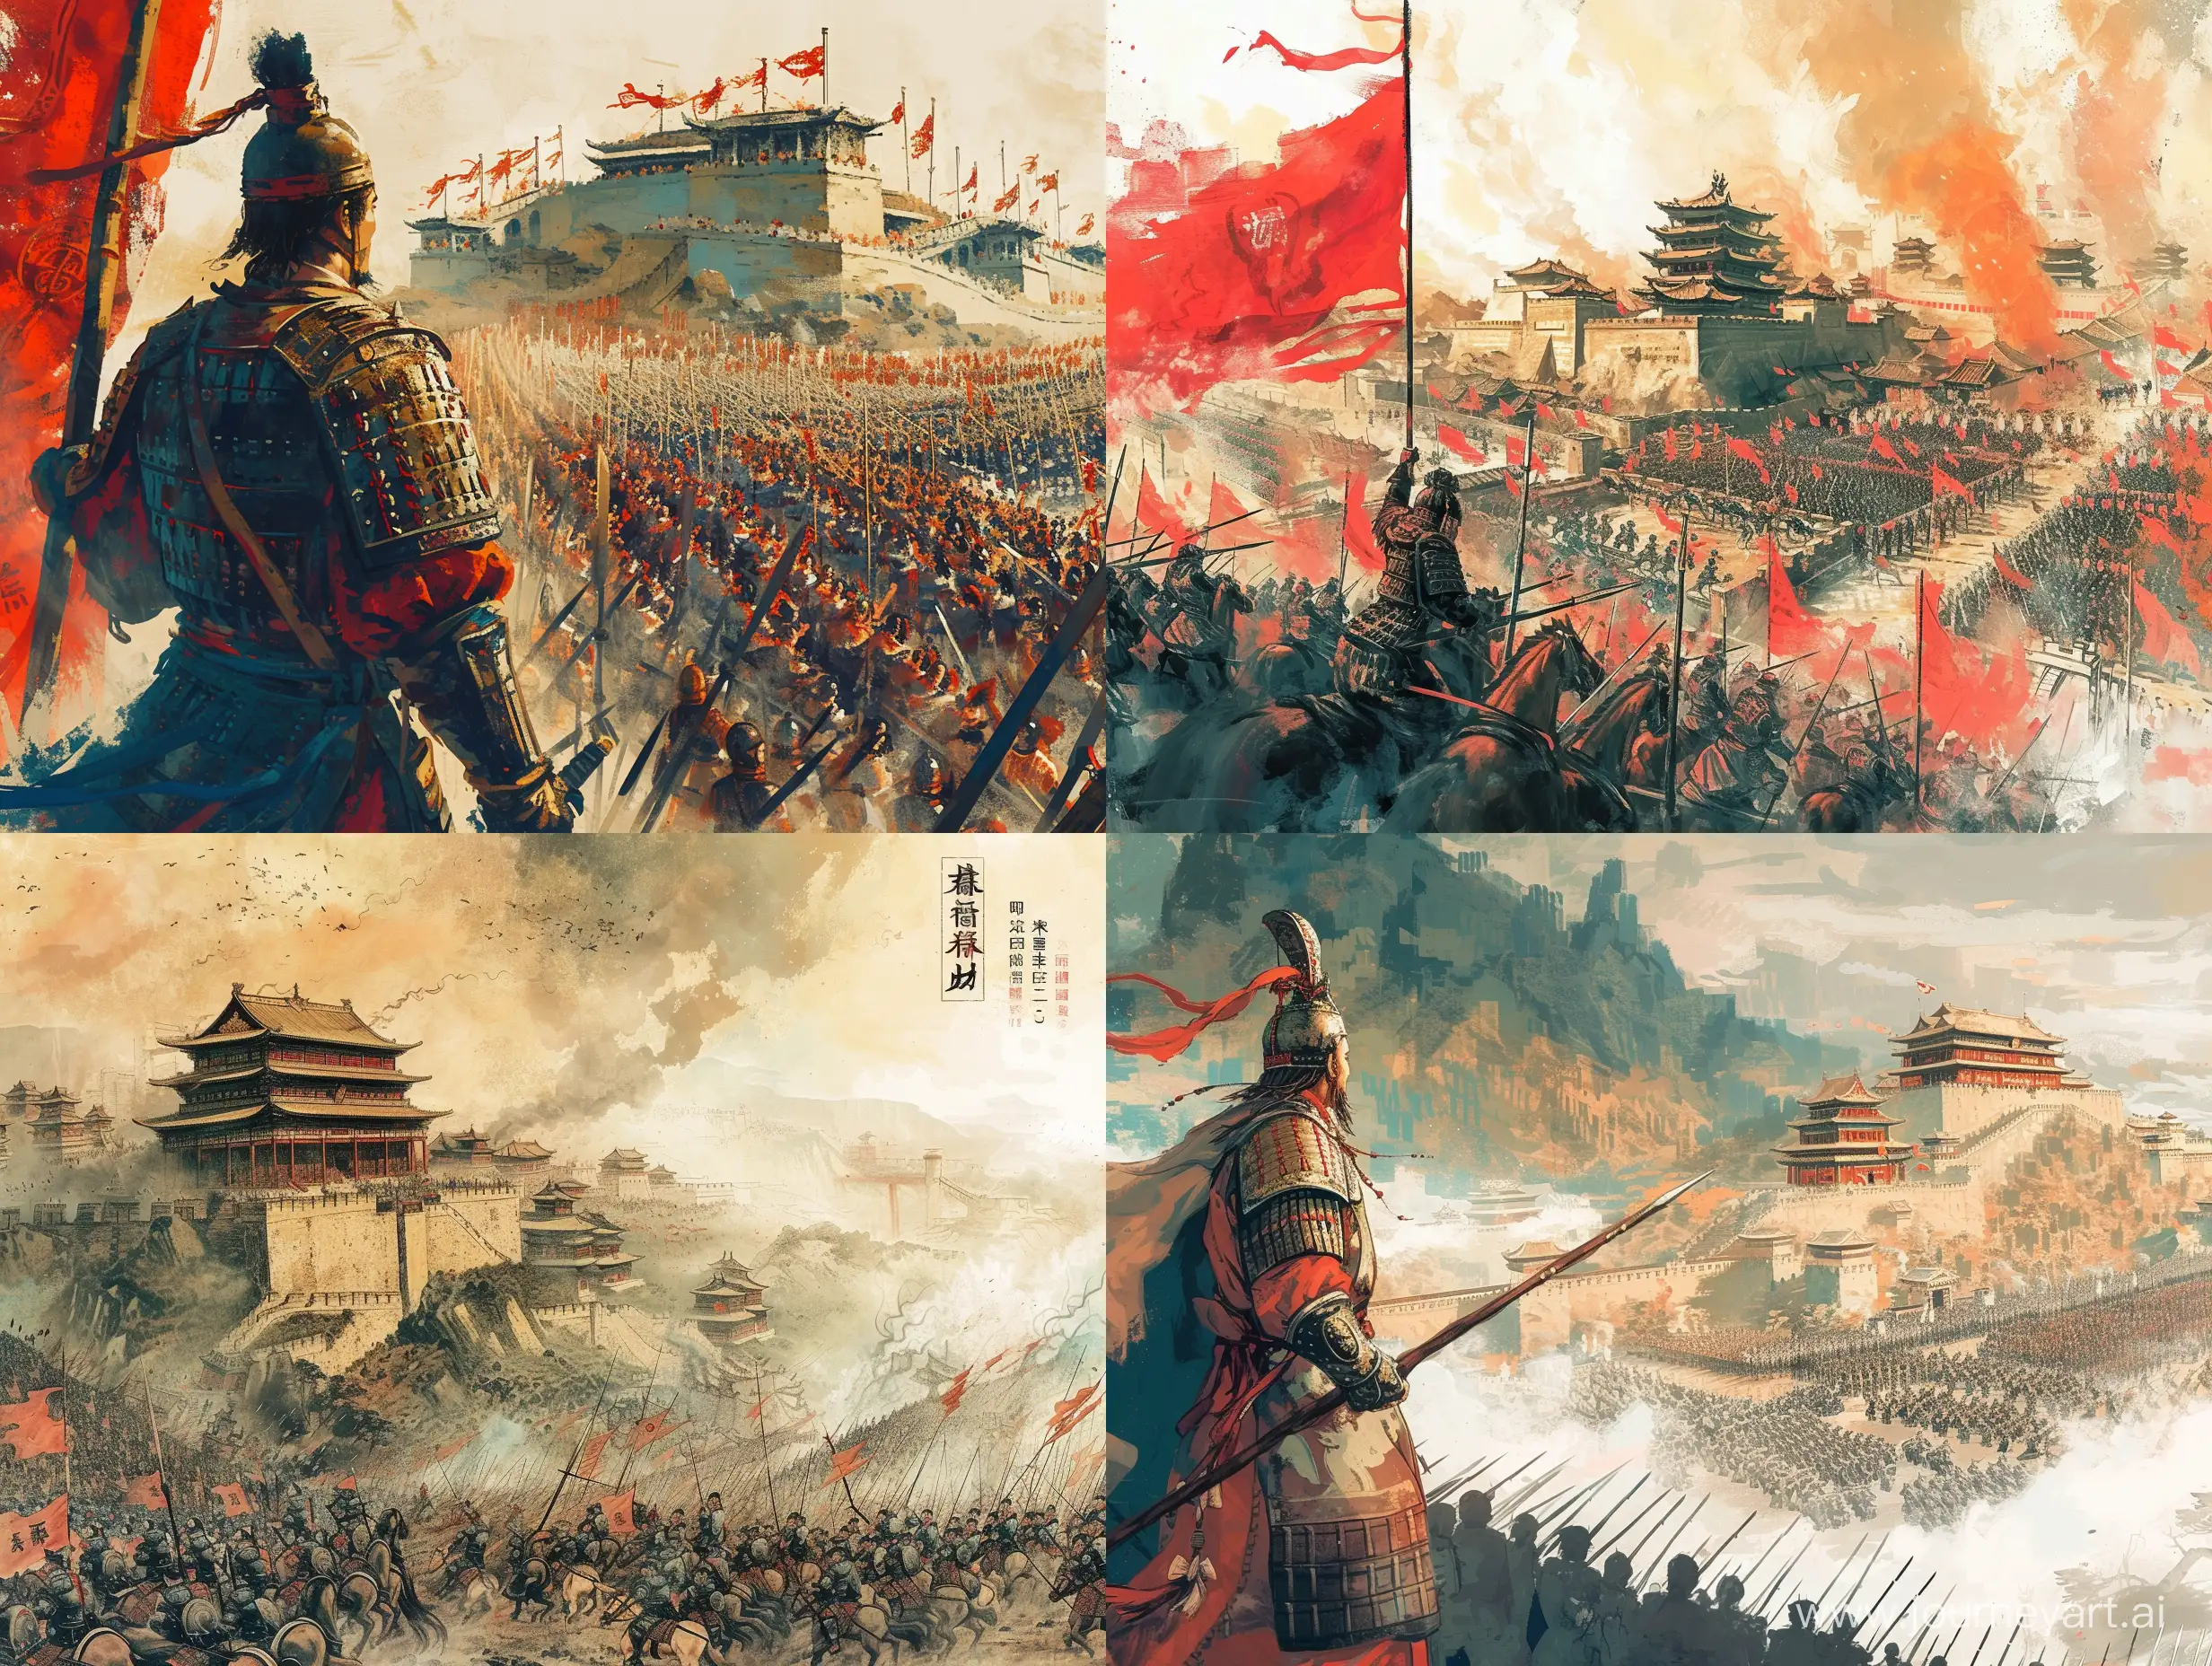 一个将军率领大军攻打城池，彩色中国风，水墨画风格，高清，高级感，大师之作，古代，东方美学。